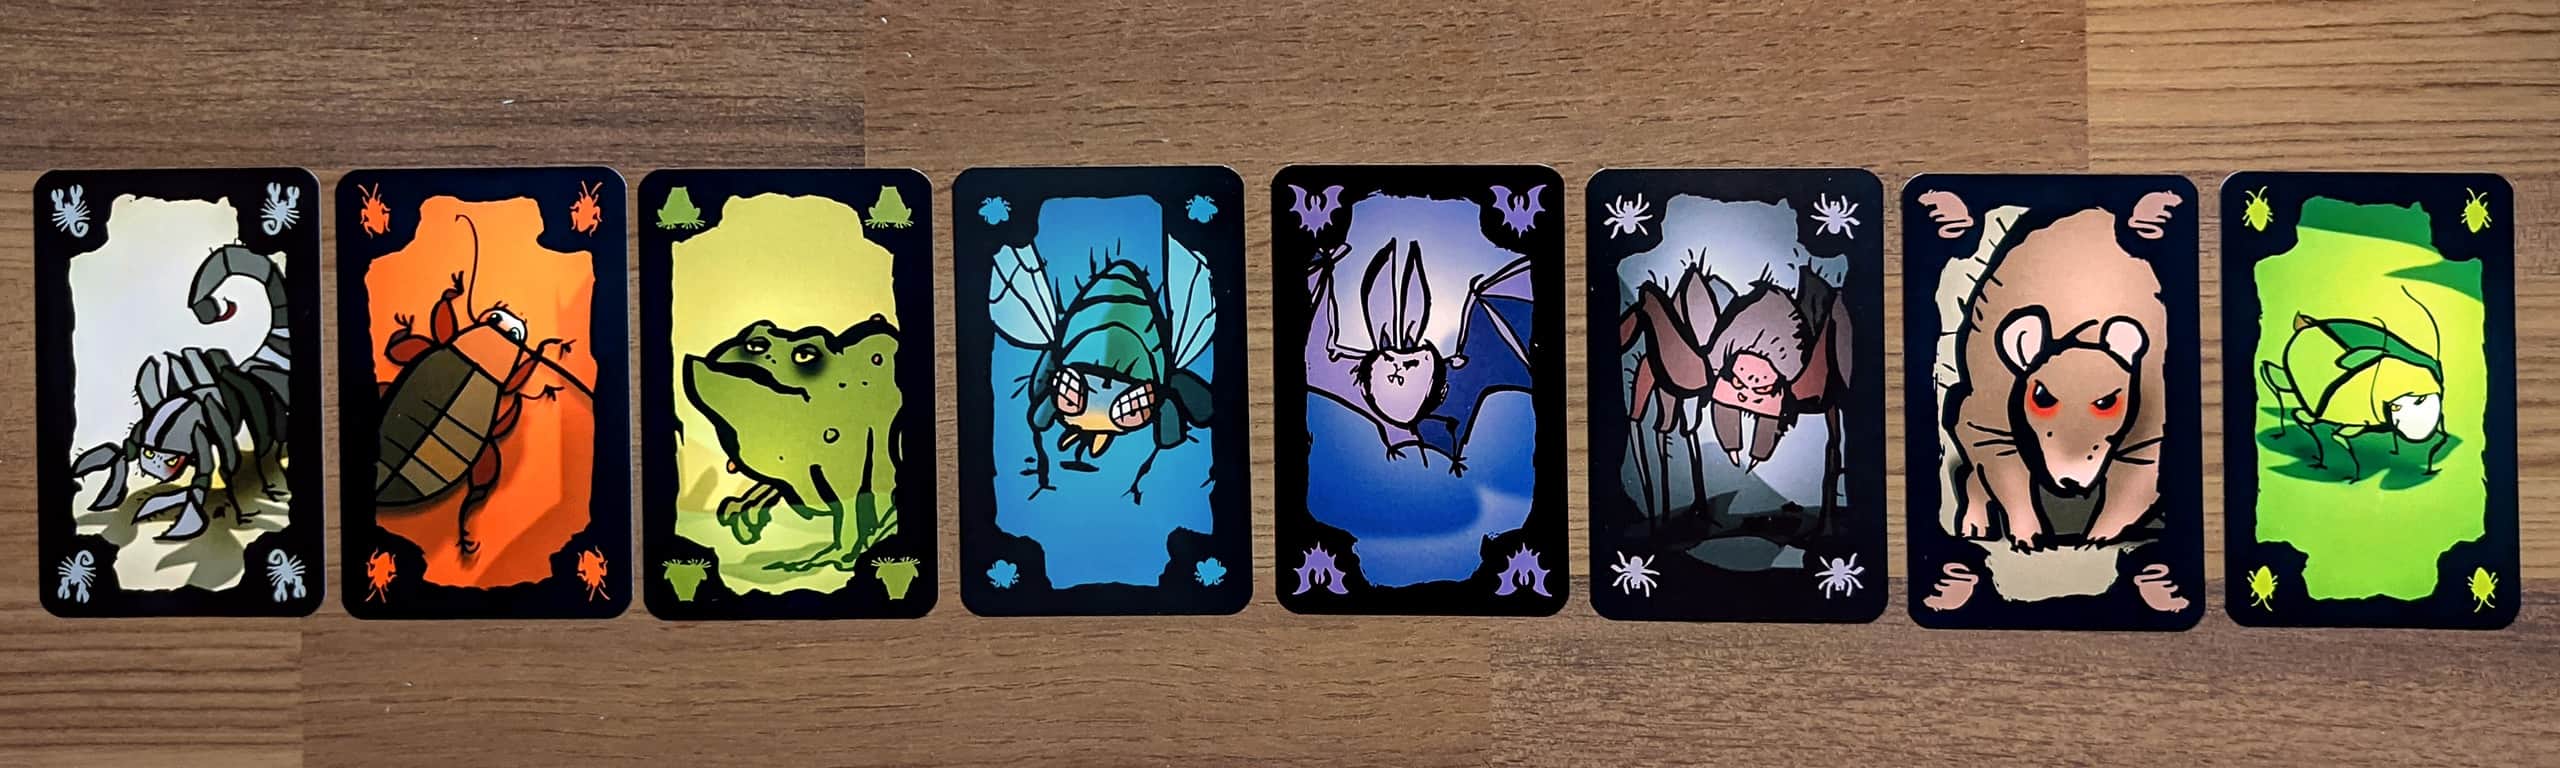 Torakkapokerin kahdeksan erilaista ötökkäkorttia.